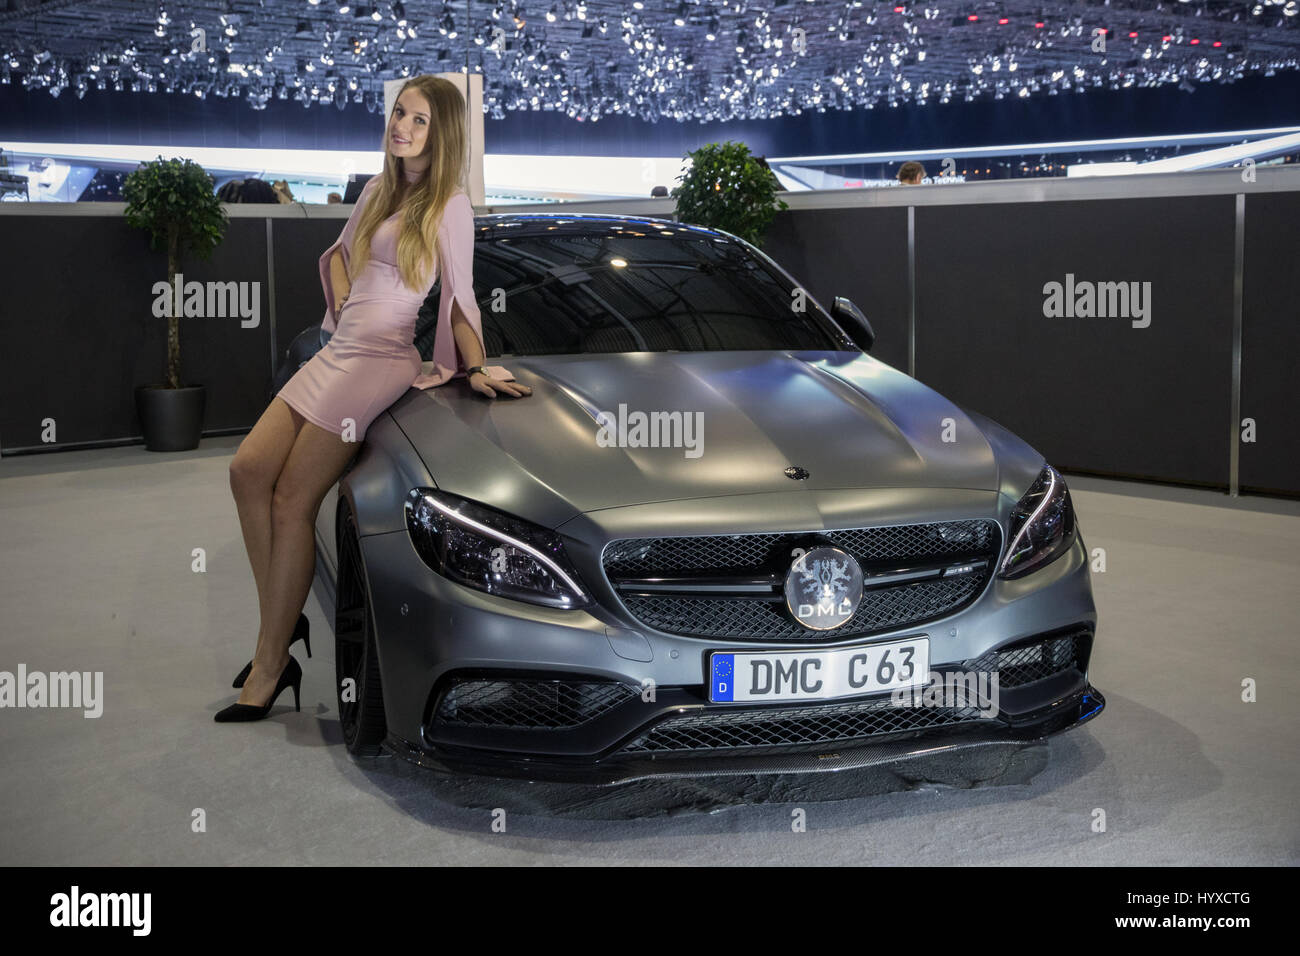 Mercedes Amg C63 Stockfotos und -bilder Kaufen - Alamy